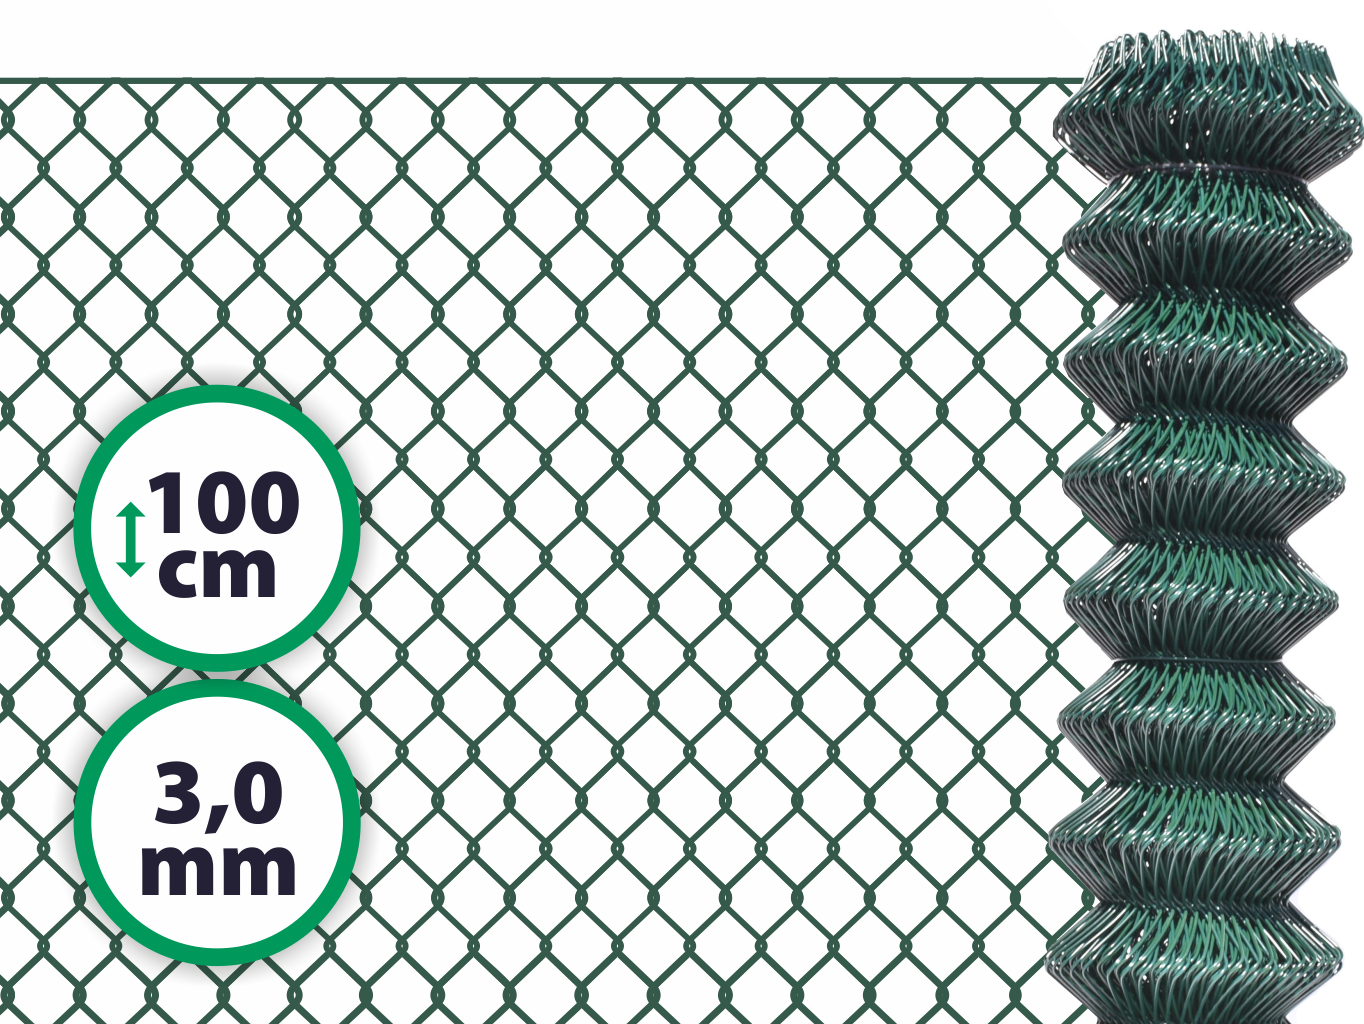 Pletivo poplastované SUPER – 100 cm bez ND (3,0 mm; 50x50 mm; PVC; zelené) PLOTY Sklad5 1500 50 8595068412718